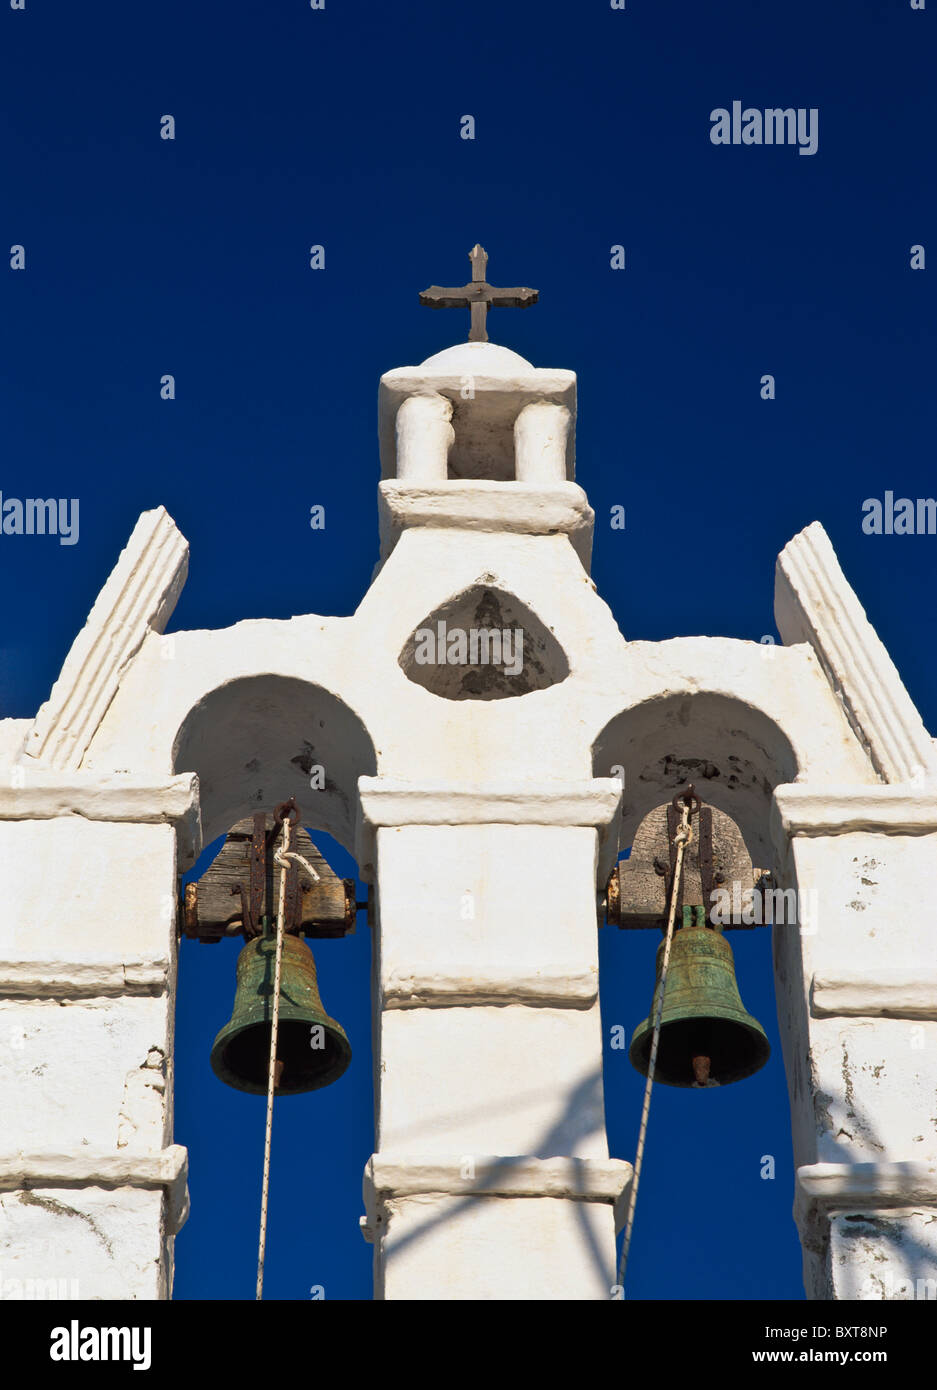 Campanile della chiesa ortodossa greca, a basso angolo di visione Foto Stock